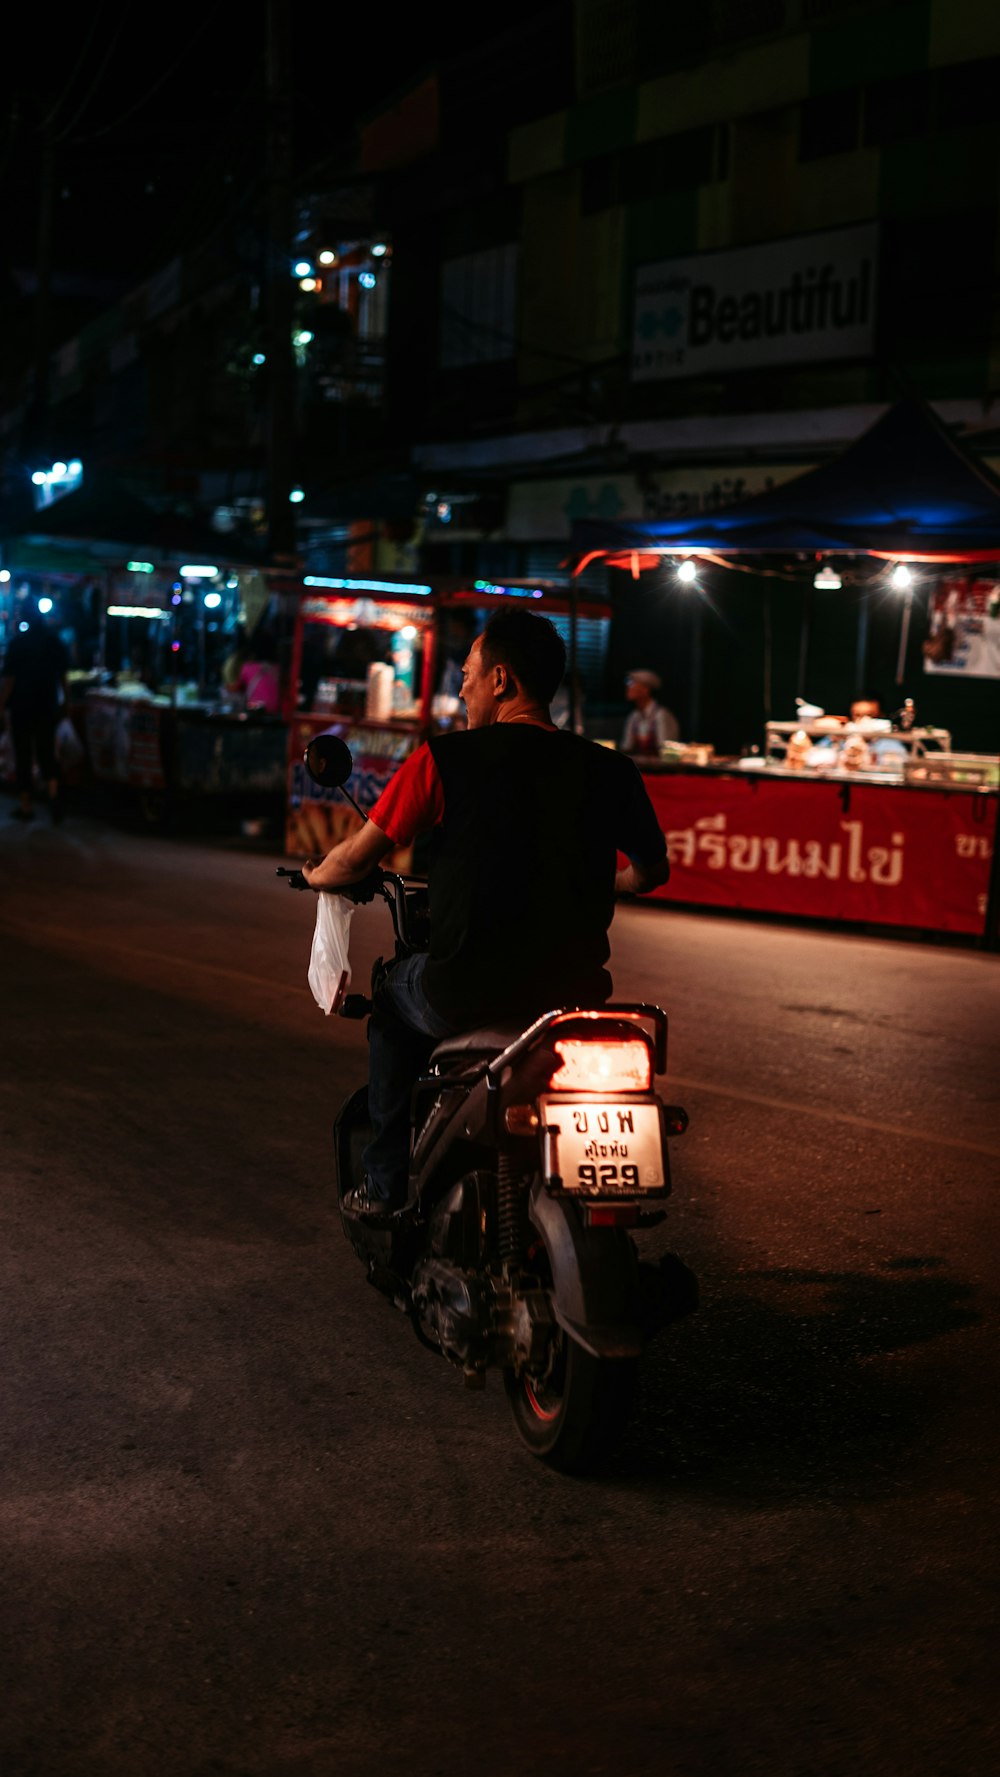 man in black jacket riding motorcycle during night time